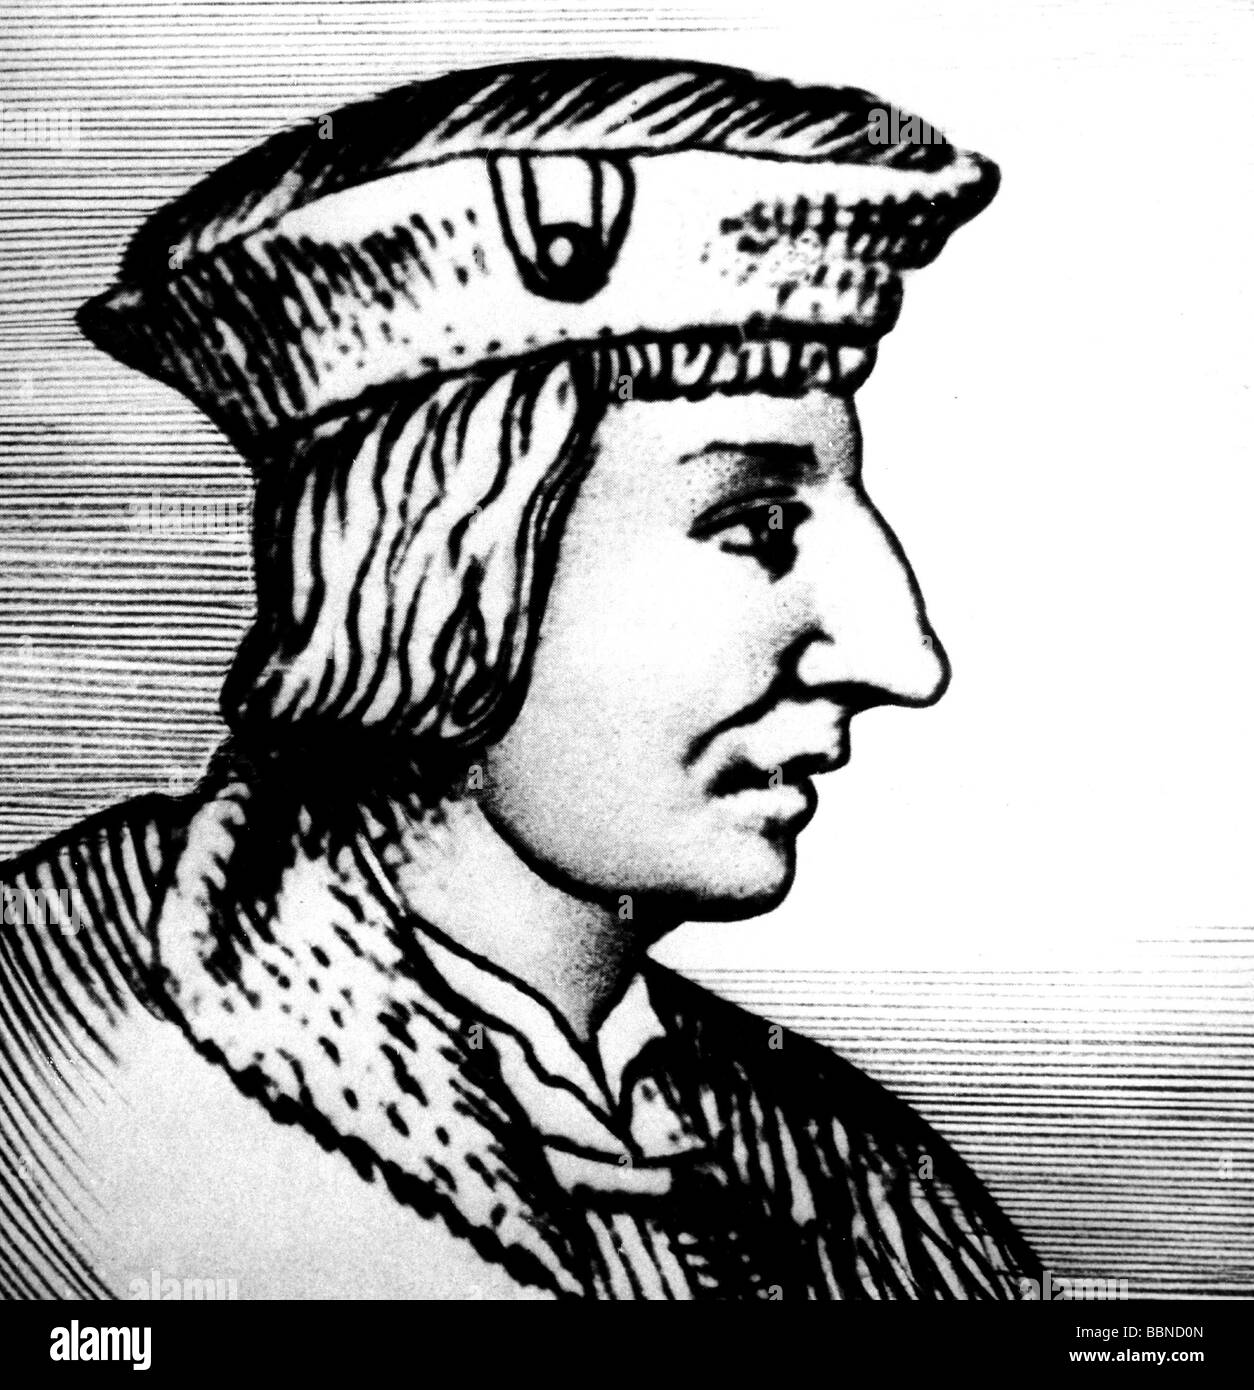 Wimpfeling, Jakob, 25.7.1450 - 17.11.1528, teologo tedesco, pedagogo, umanista, ritratto, faccia laterale, dopo incisione su rame, artista del diritto d'autore non deve essere cancellata Foto Stock